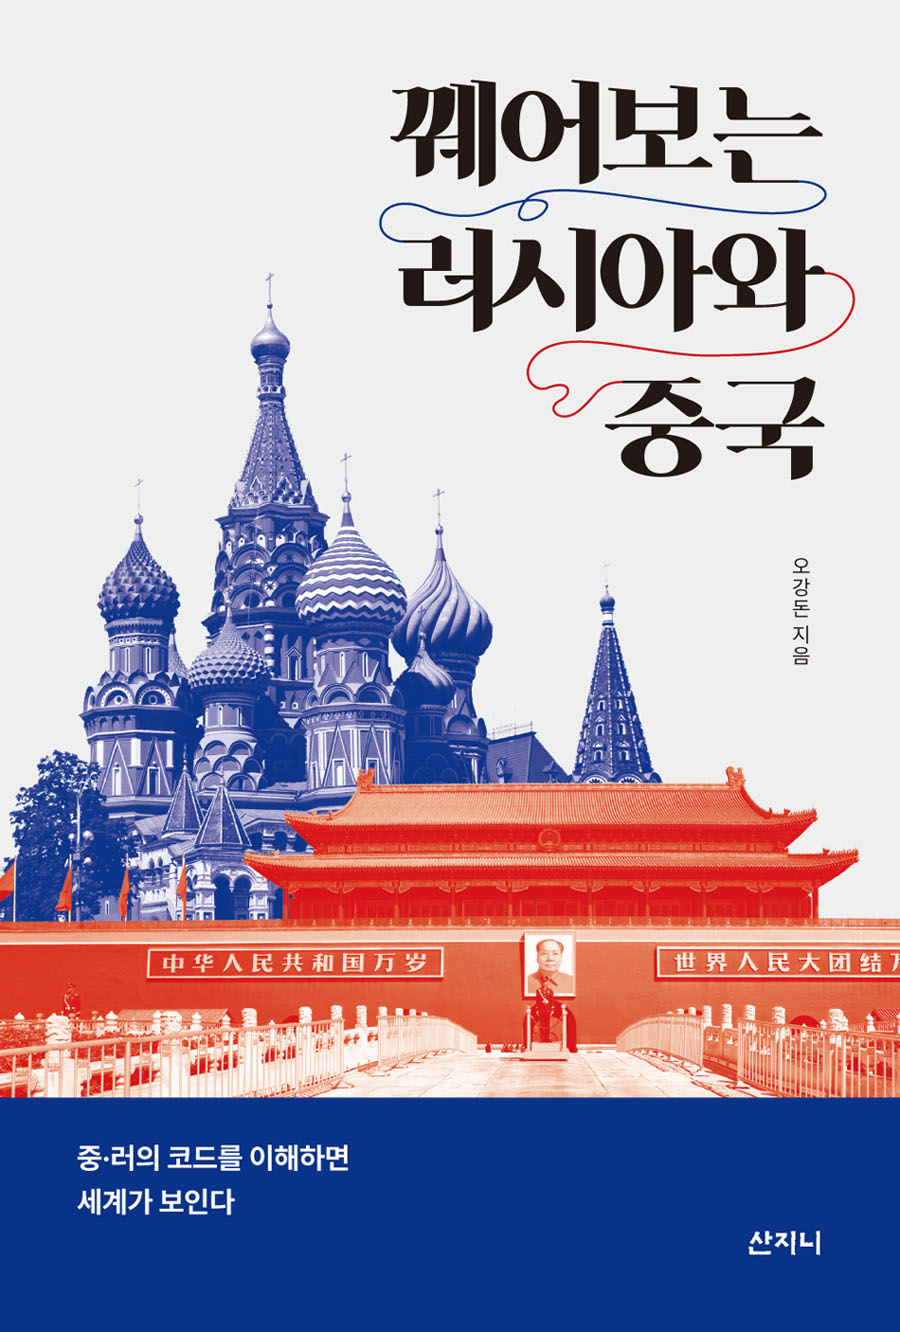 꿰어보는 러시아와 중국(장애인 접근성 강화 전자책)